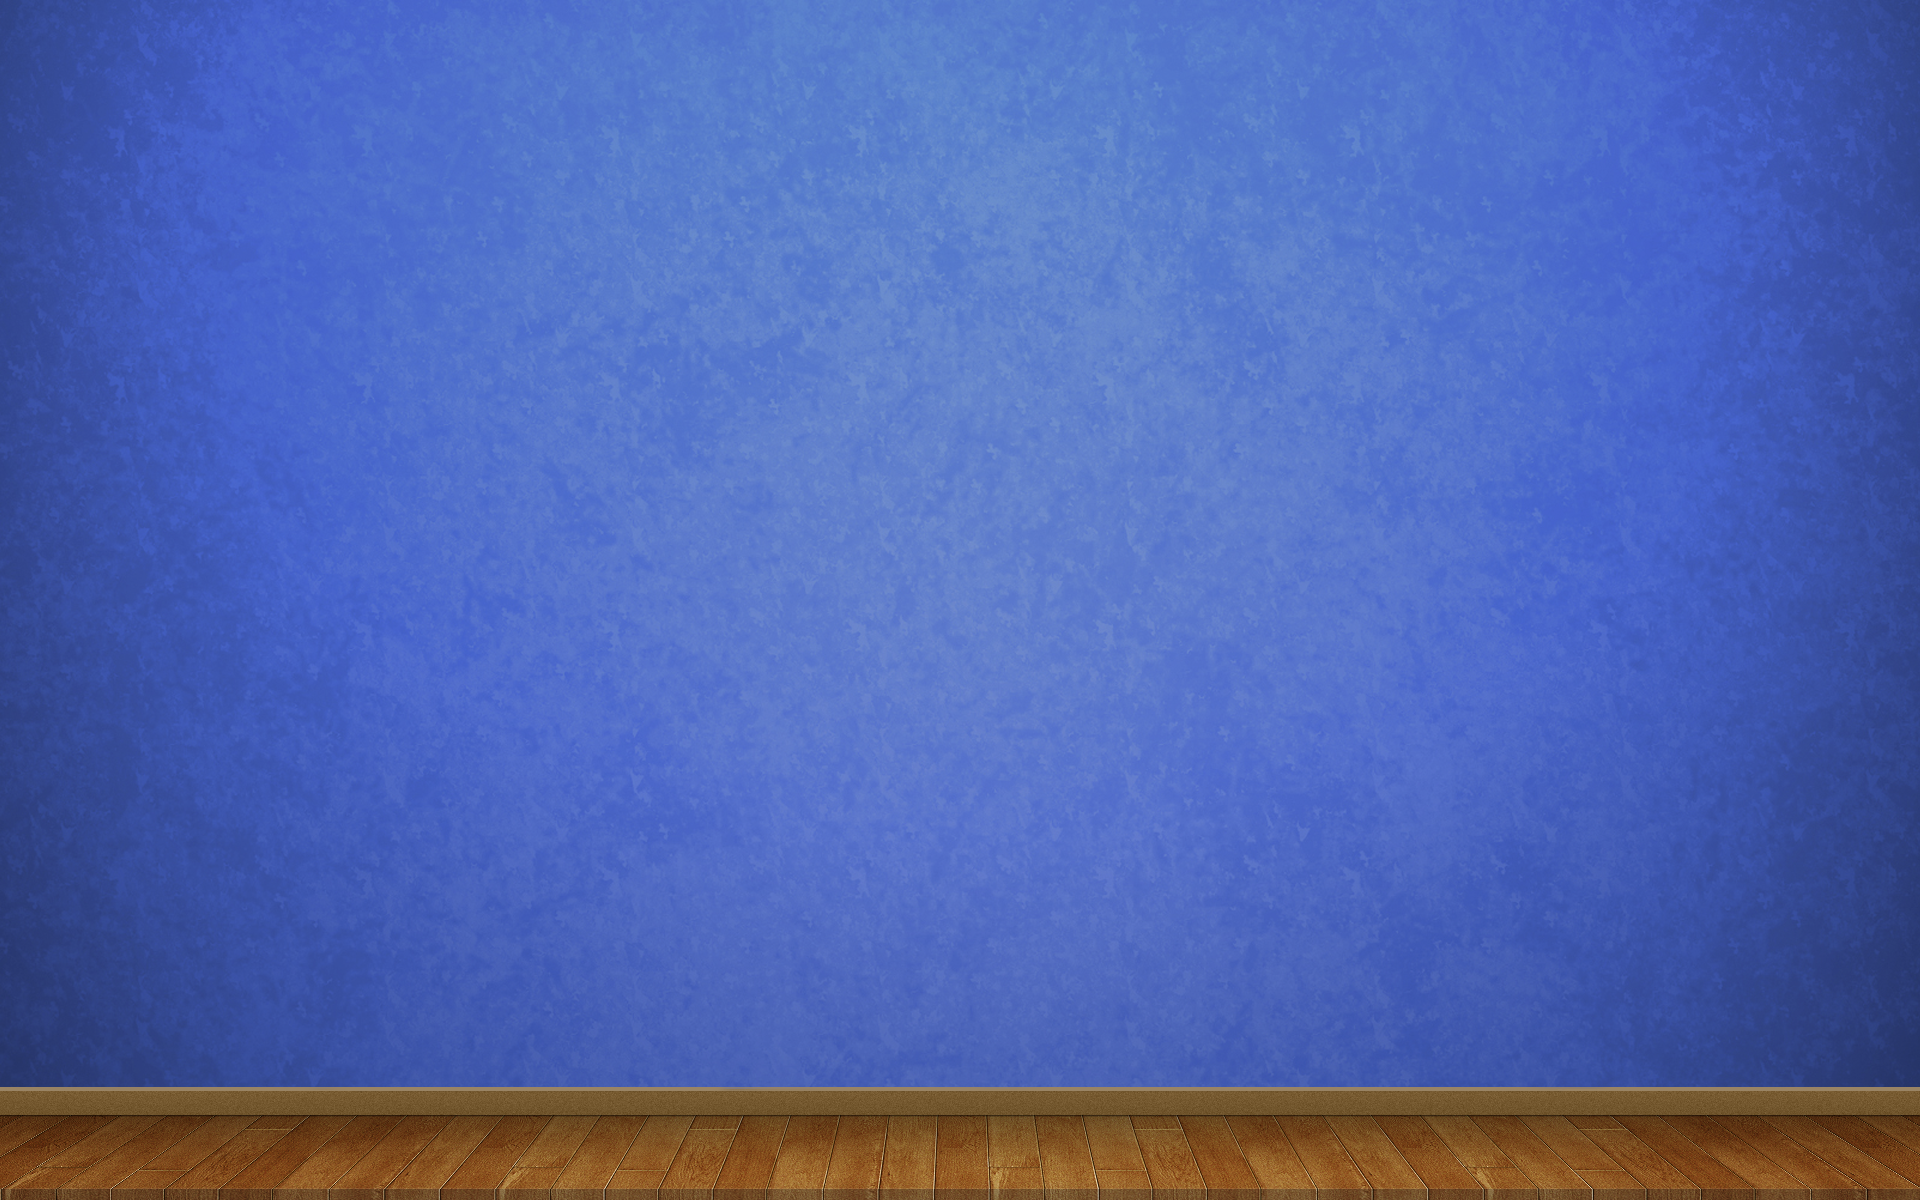 壁のための青い壁紙,青い,コバルトブルー,エレクトリックブルー,壁,木材